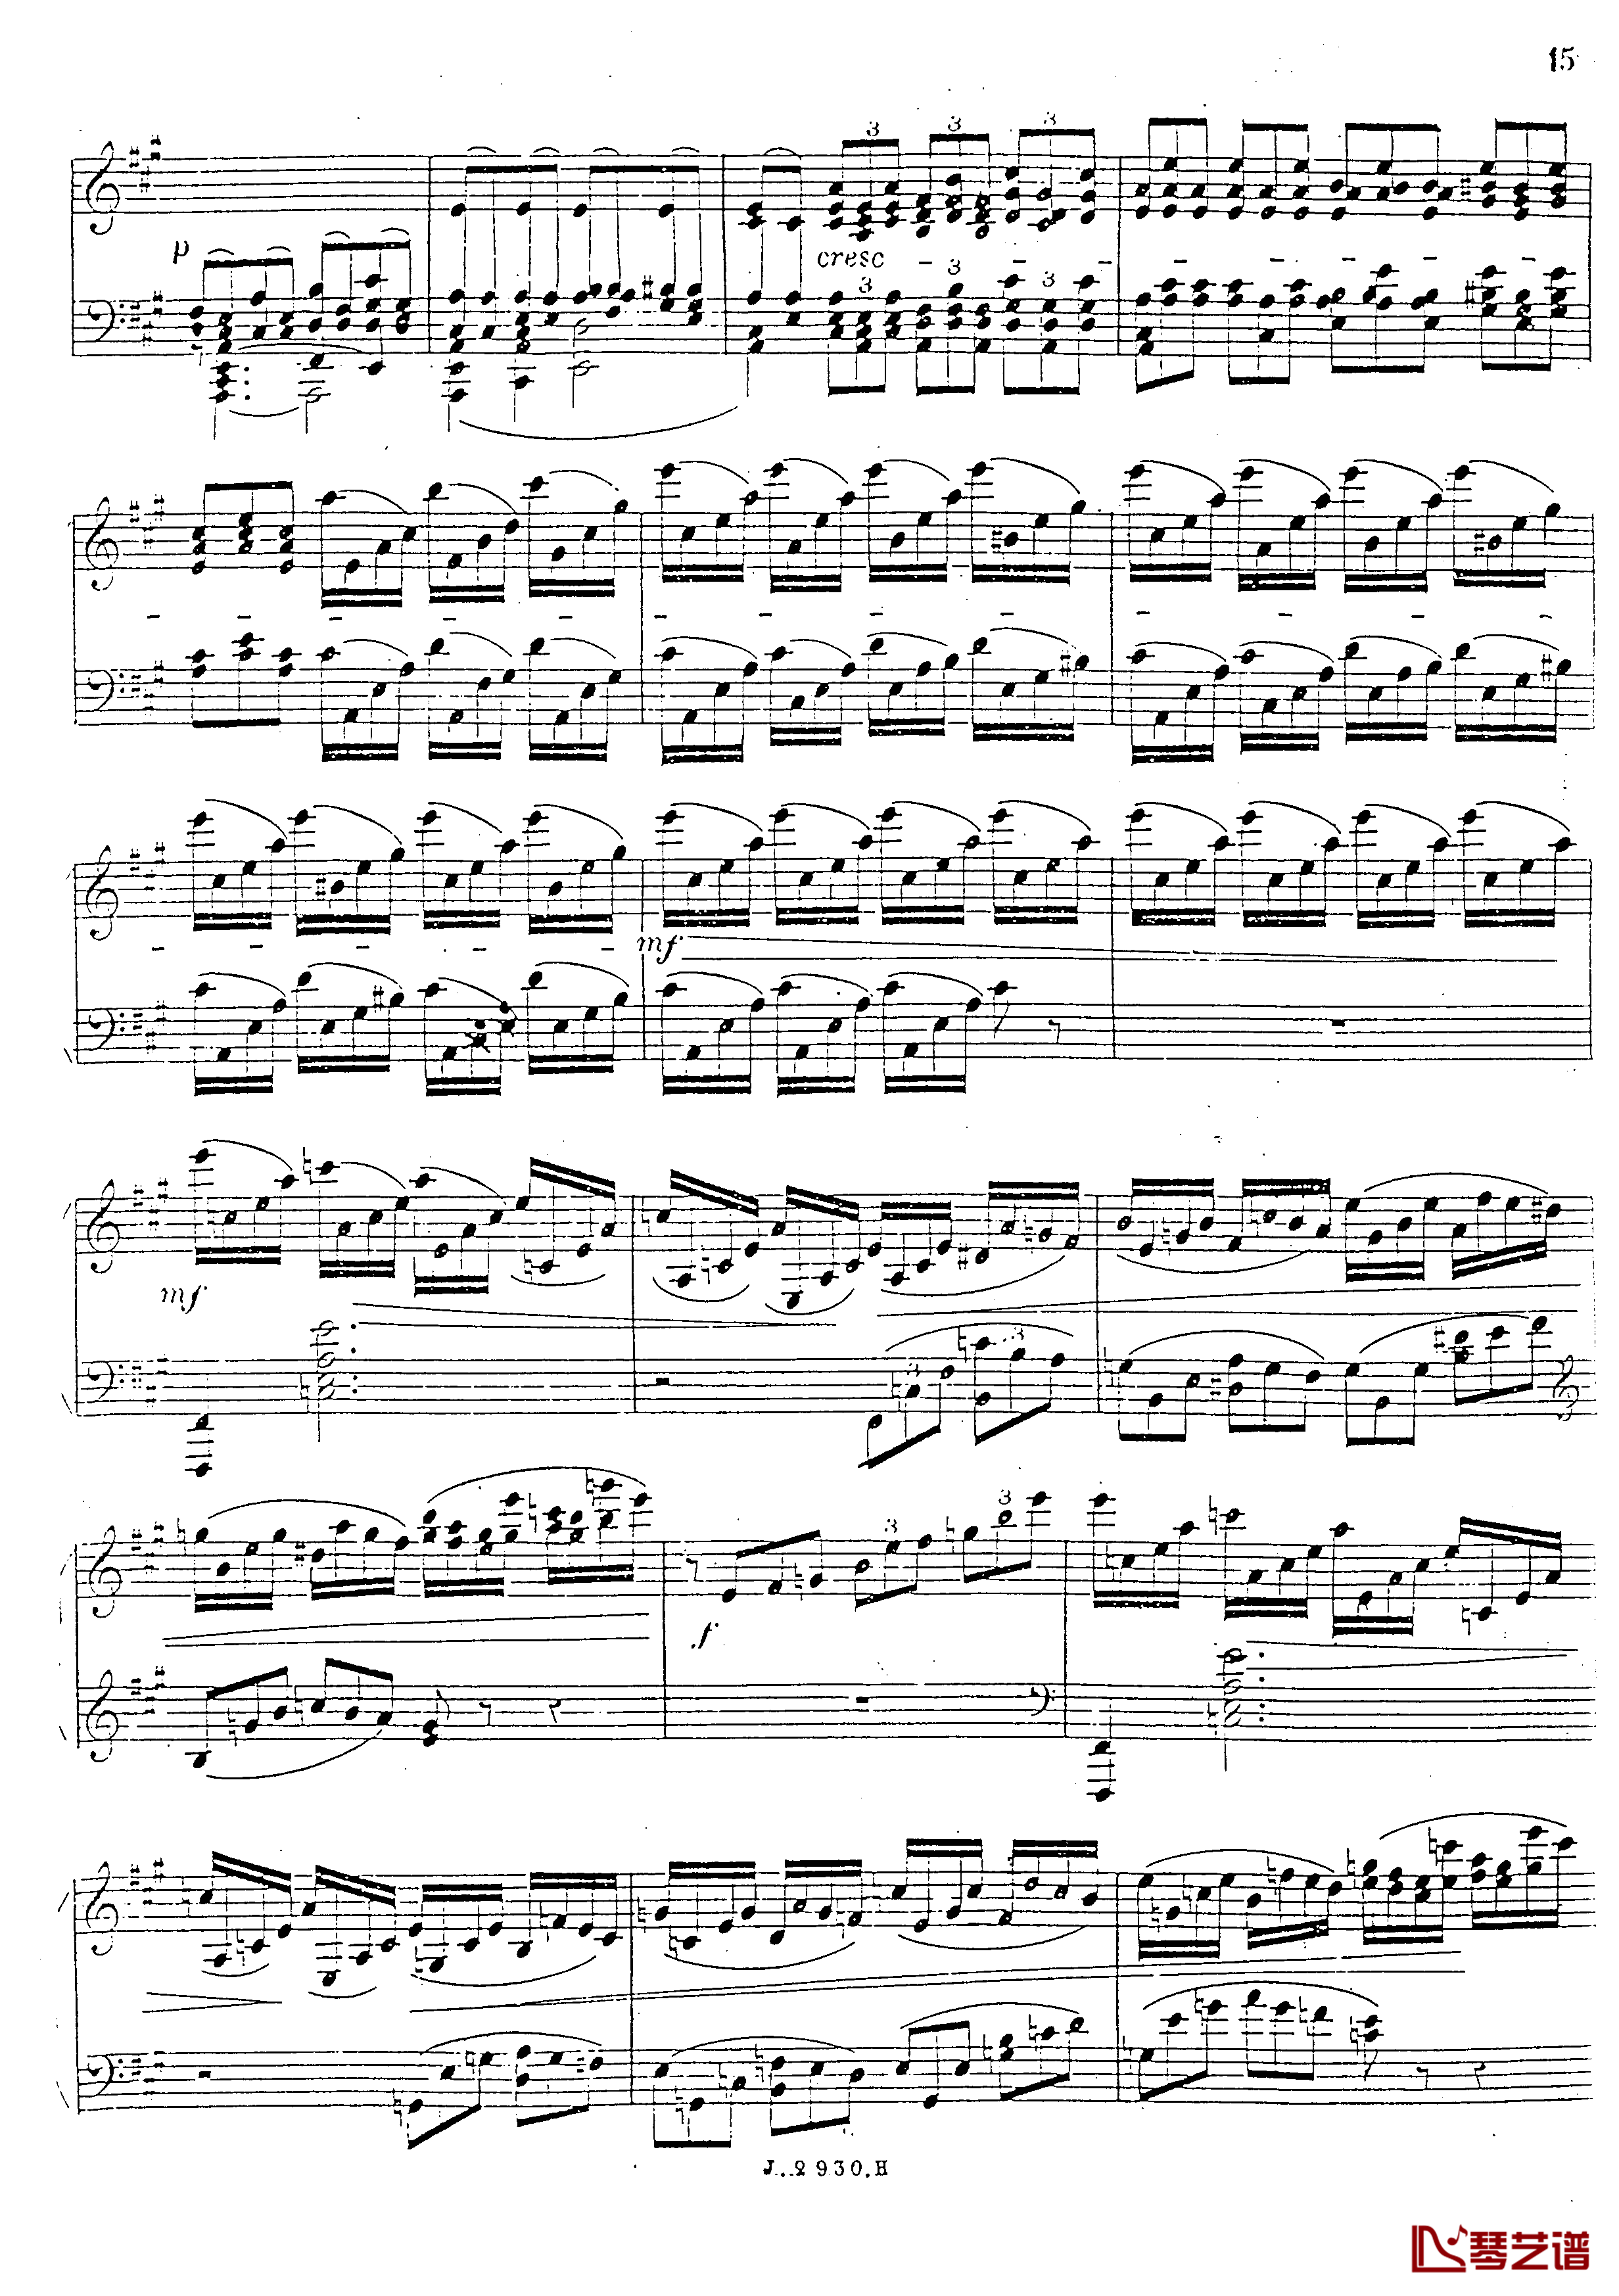 a小调第四钢琴奏鸣曲钢琴谱-安东 鲁宾斯坦- Op.10016